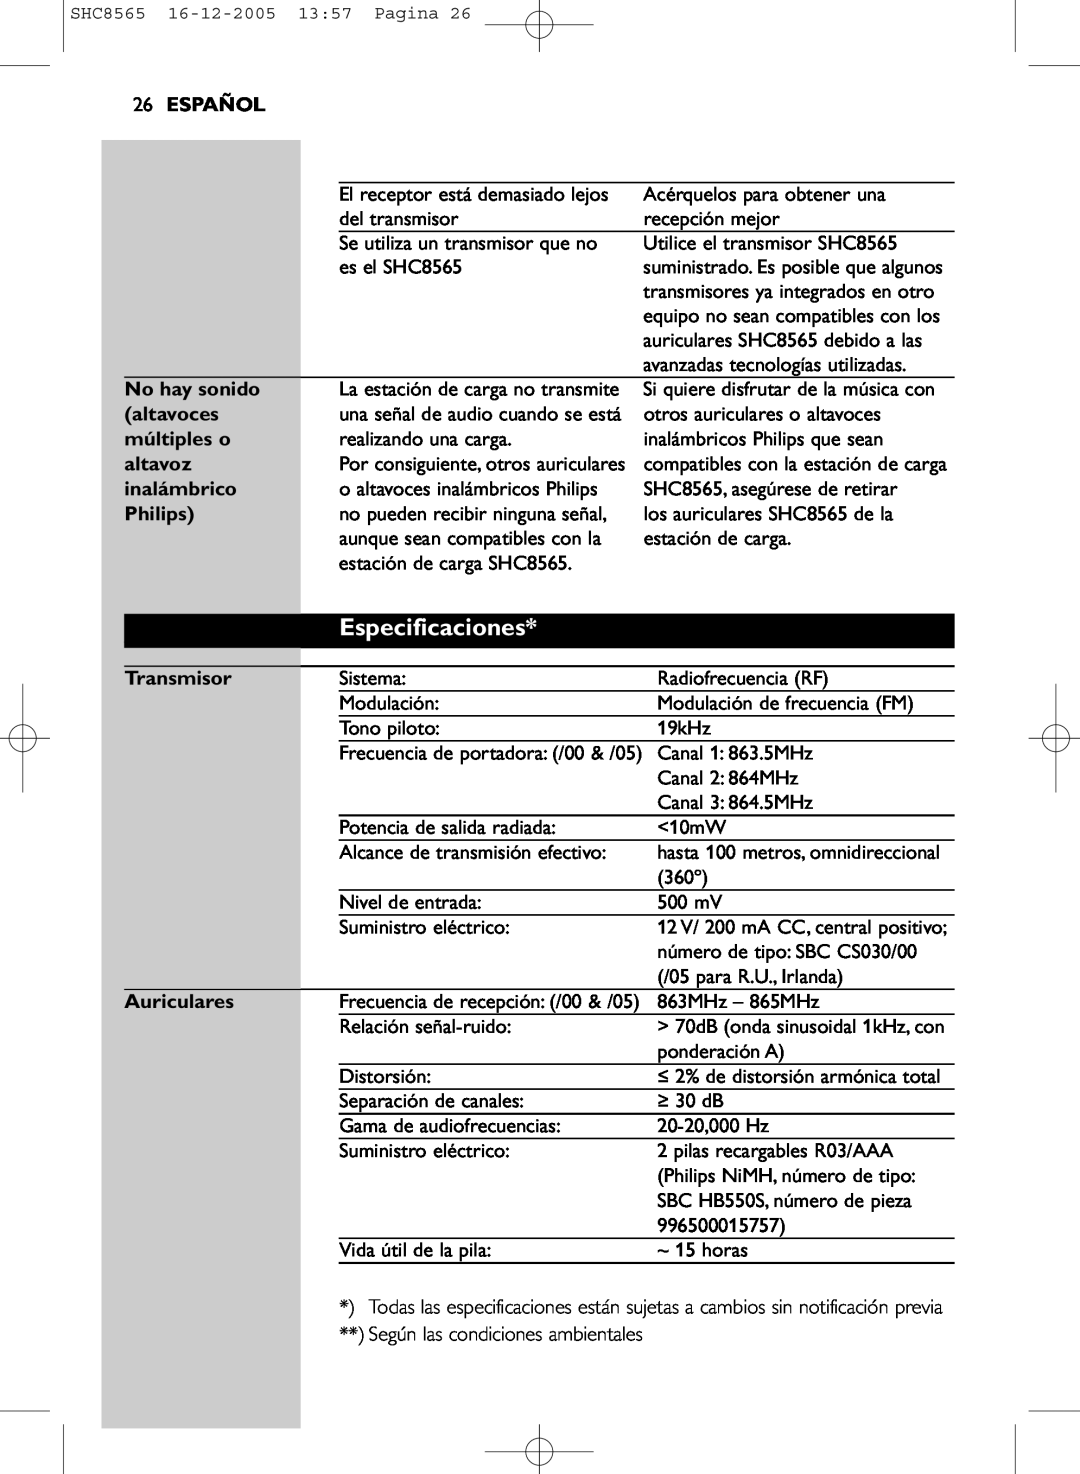 Philips SHC8565 manual Especificaciones, 26ESPAÑOL, No hay sonido, altavoces, múltiples o, altavoz, inalámbrico, Philips 